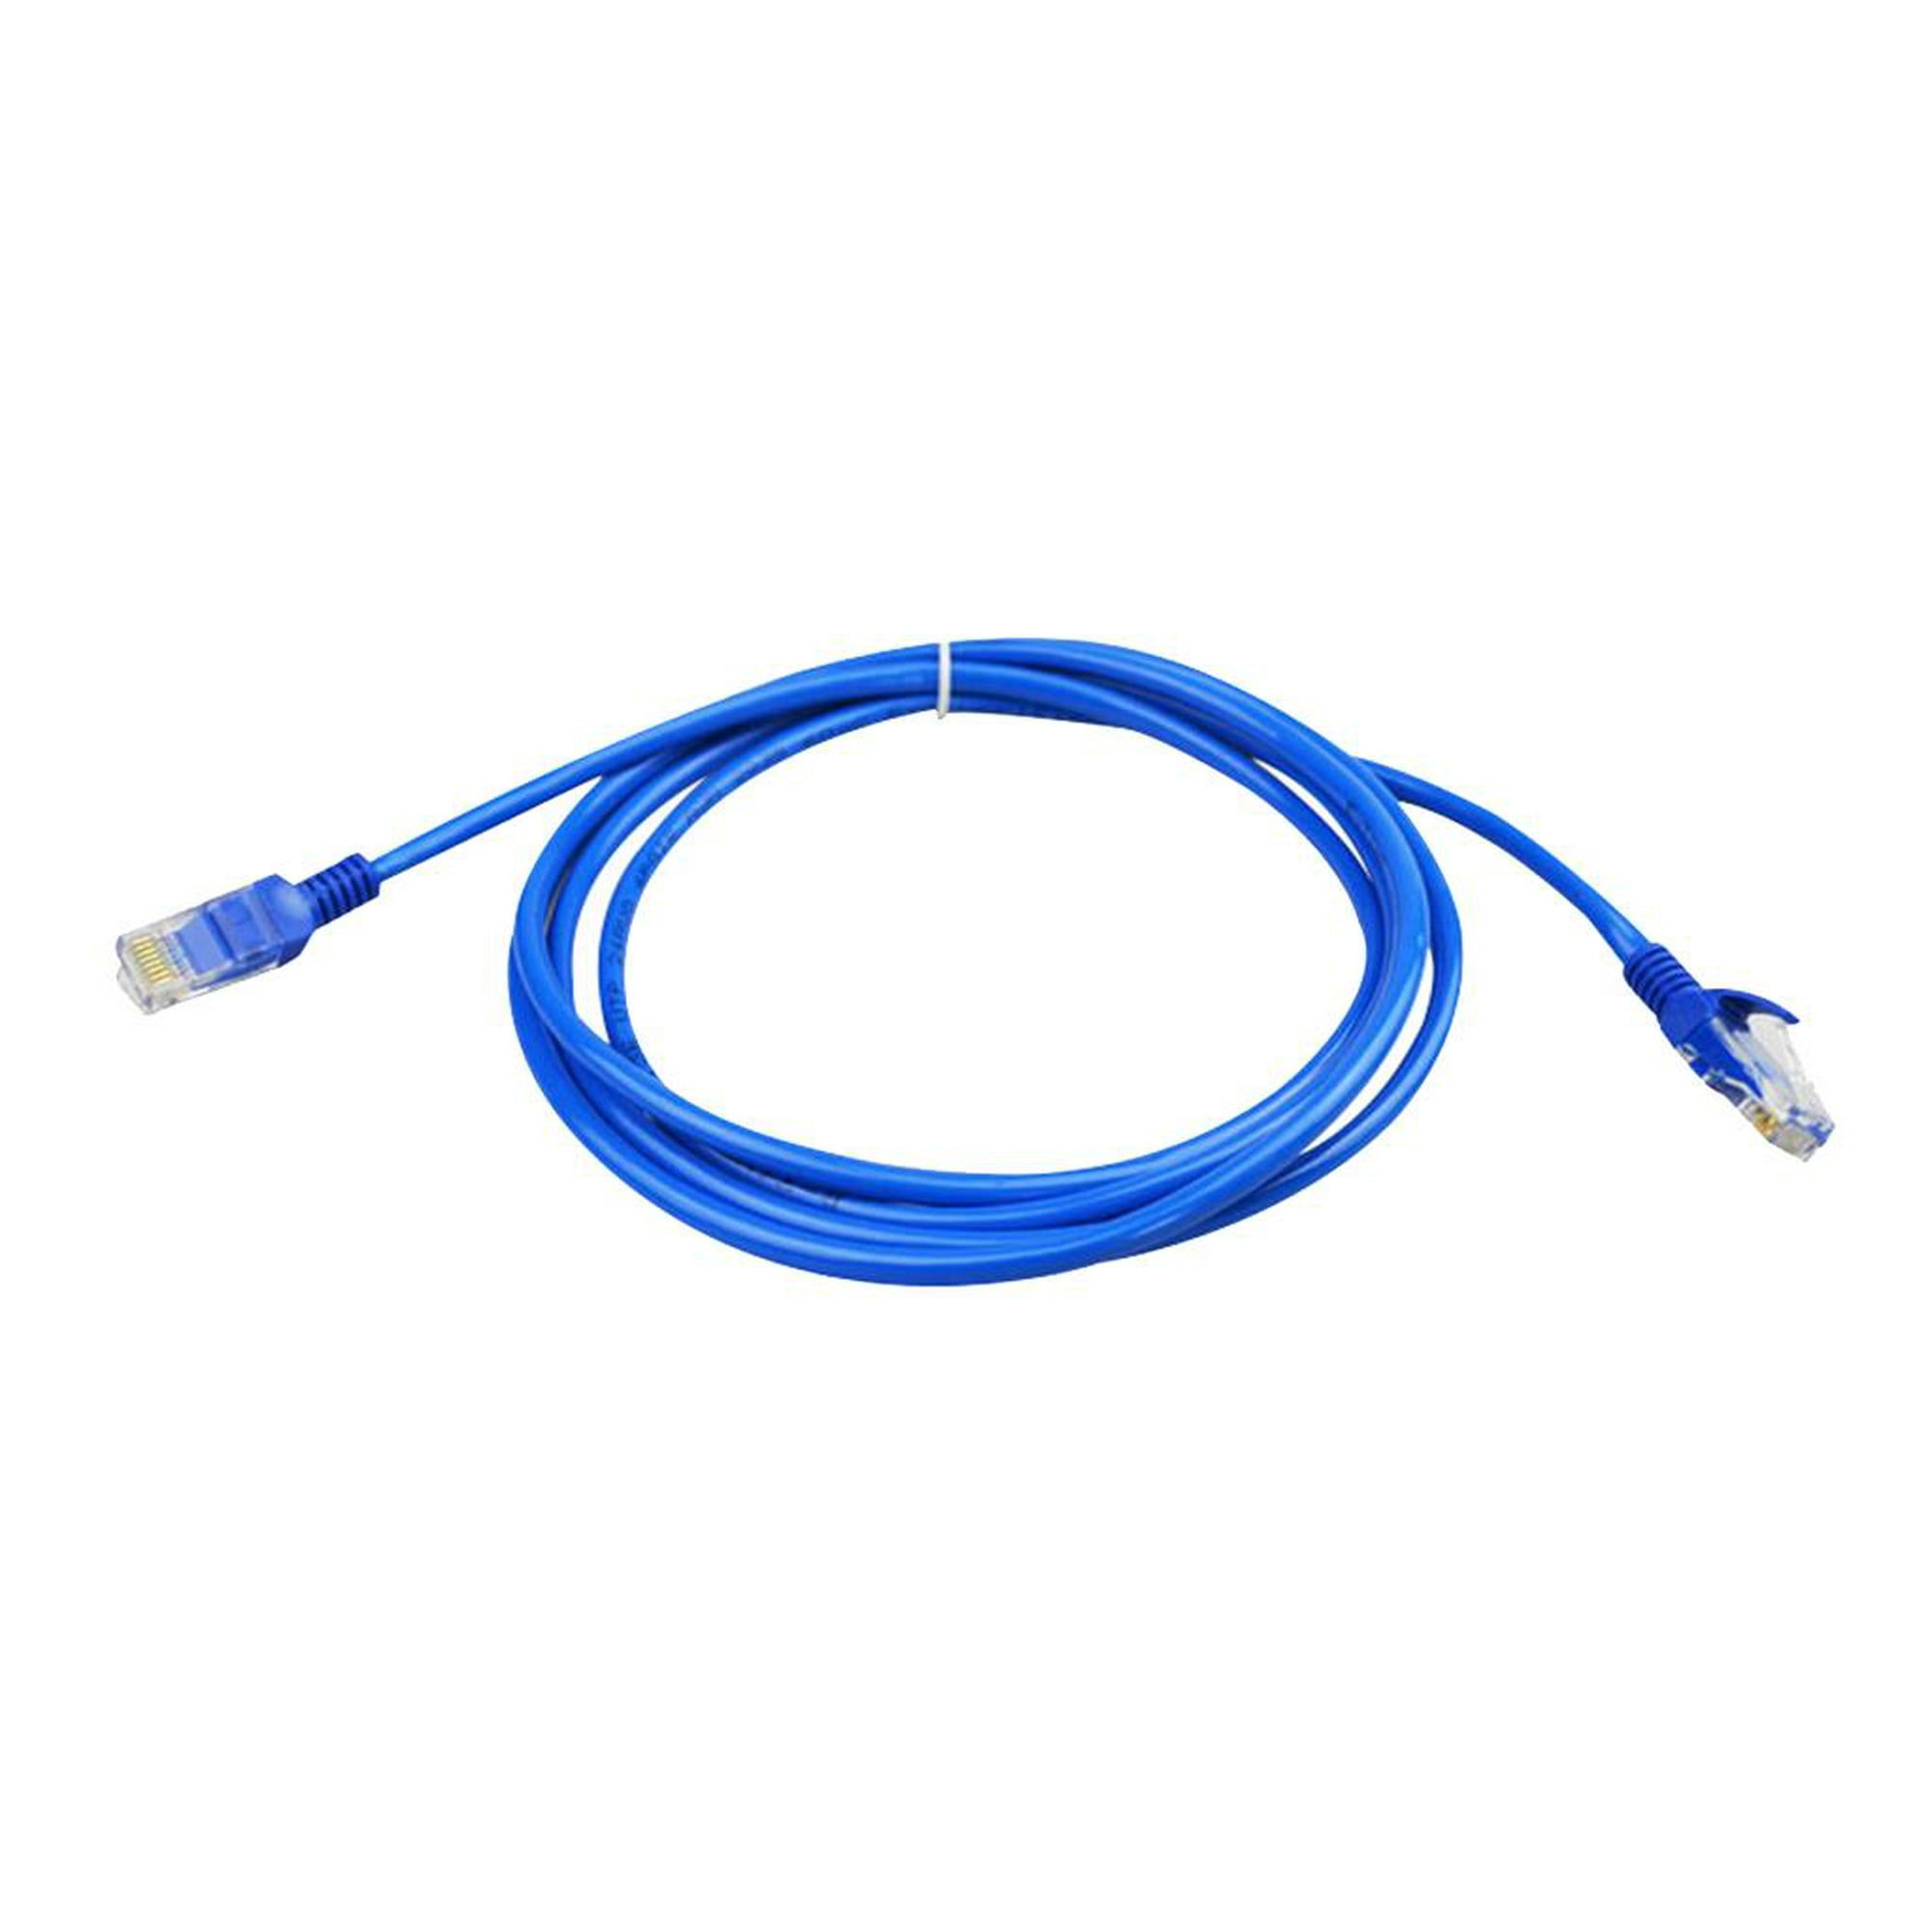  WDJBPSH Kit de cable flexible y cortable, canaleta de cables  resistente para proteger los cables HDMI/TV de alimentación/Ethernet, fácil  de instalar (color : 2.0 in de ancho, tamaño: 78.7 ft/78.7 pies) 